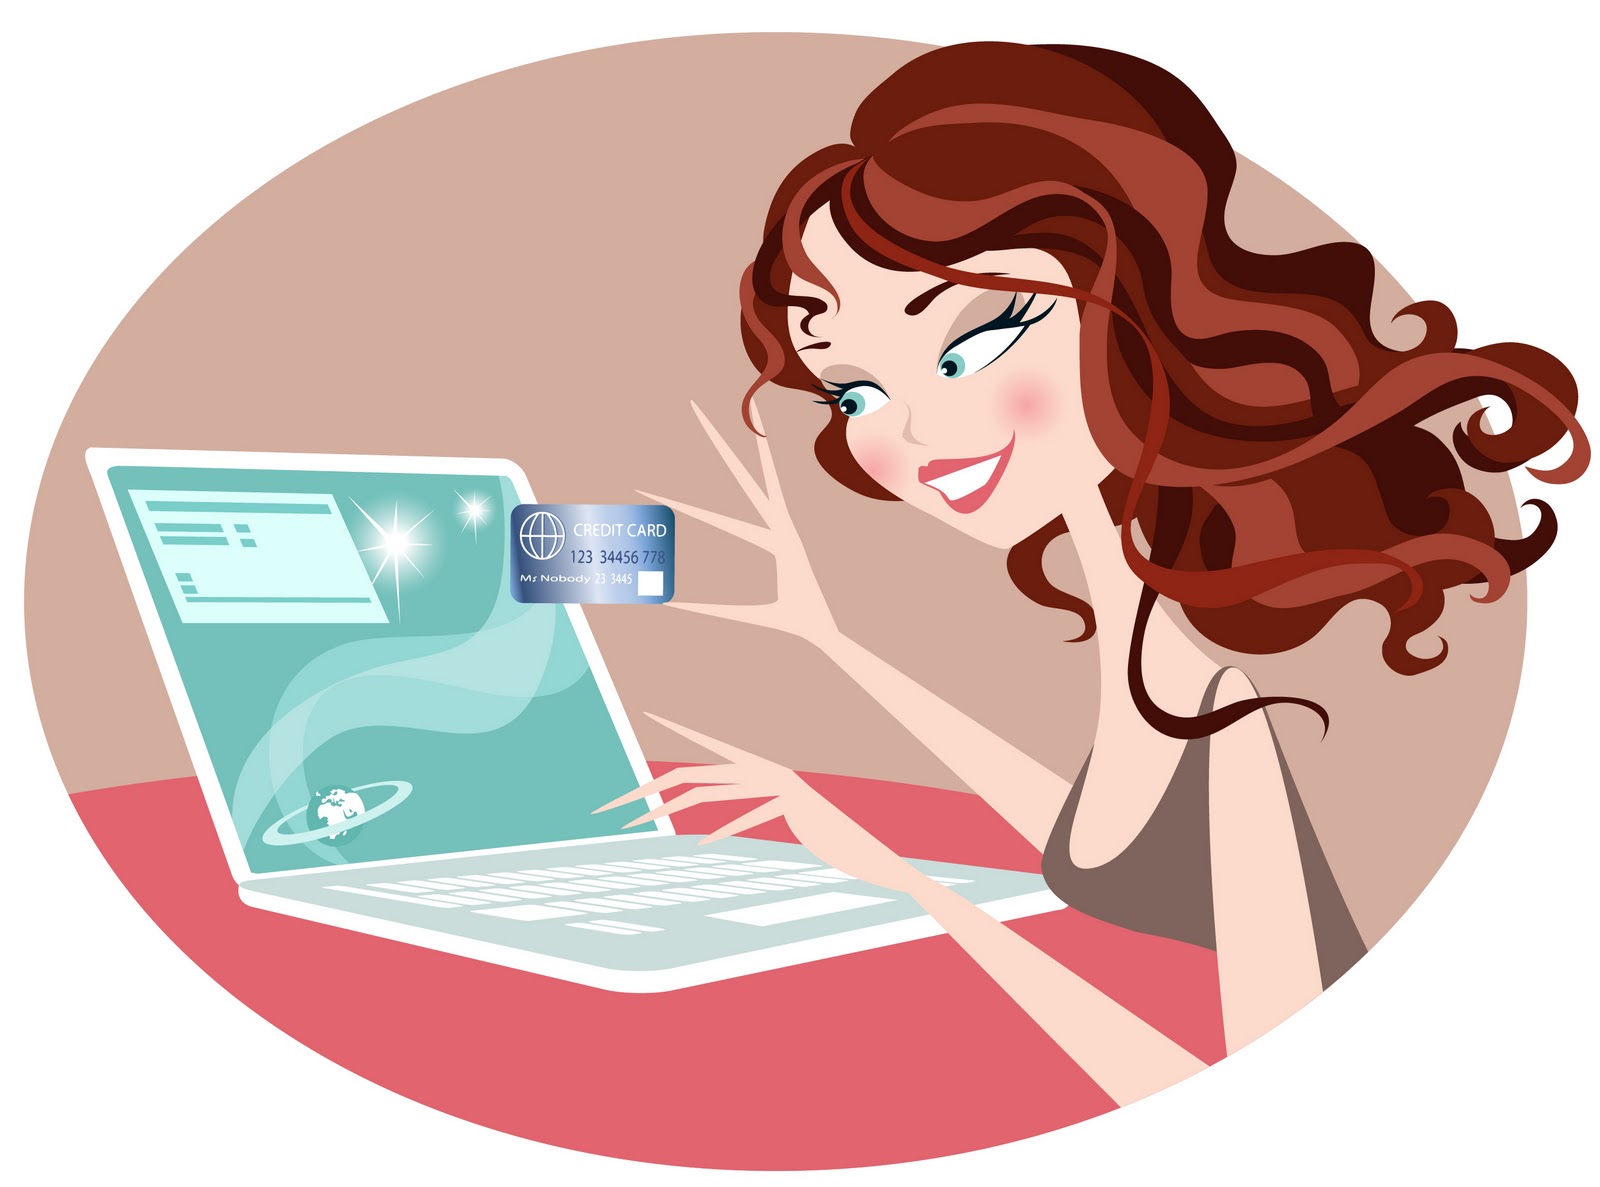 Online-shopping-girl-illustration.jpeg